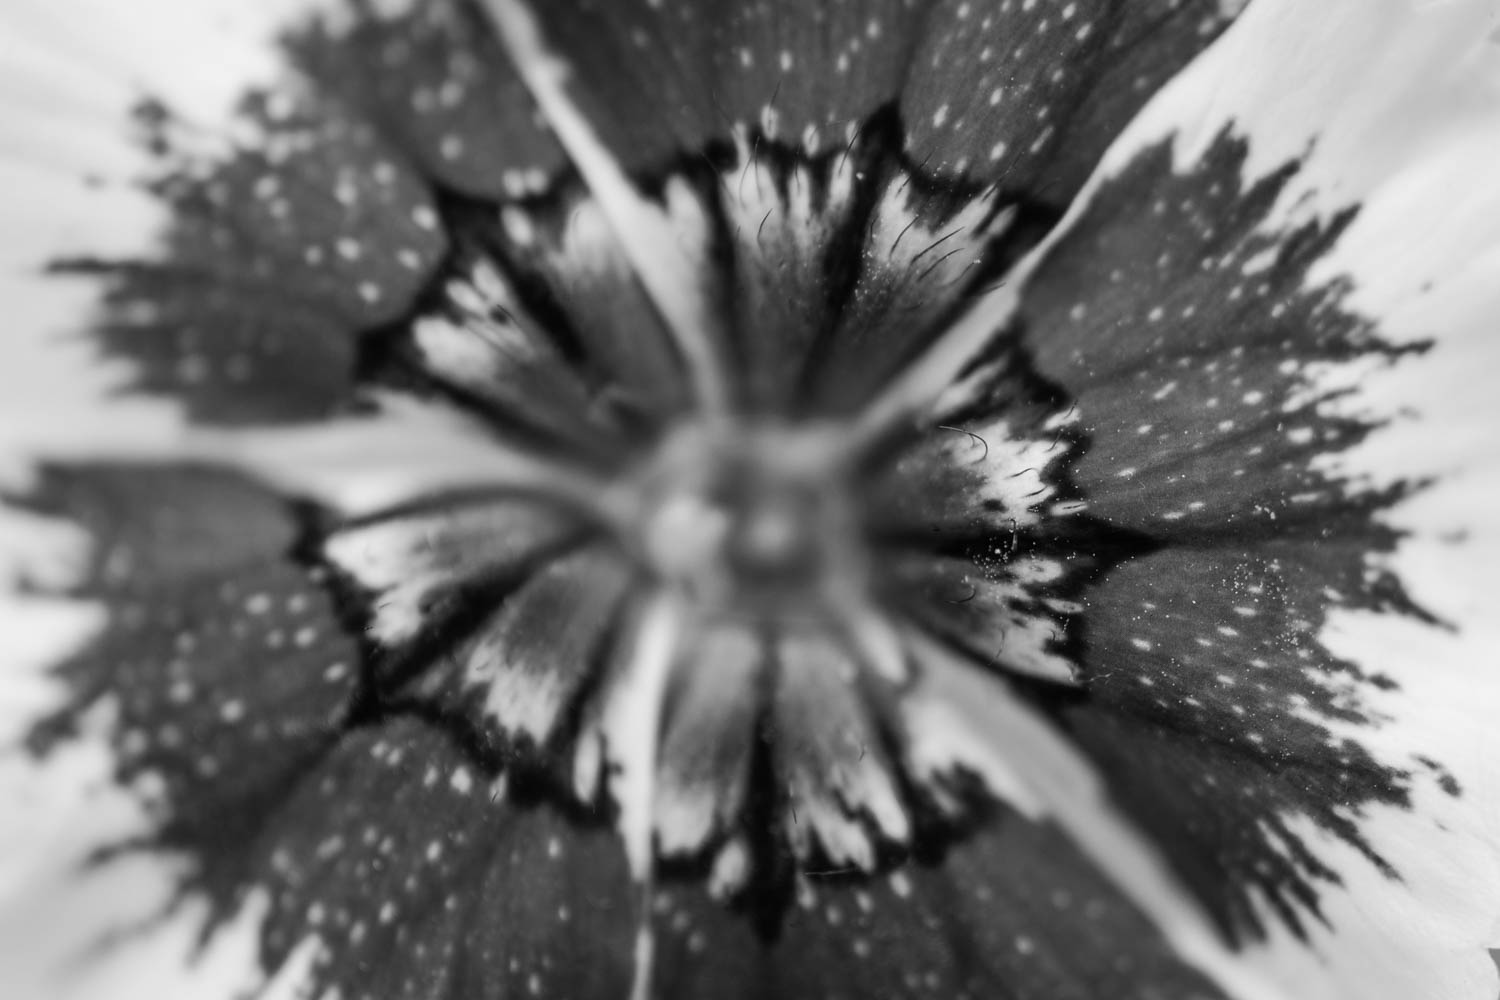 Dianthus fresh edible black and white macro photo.